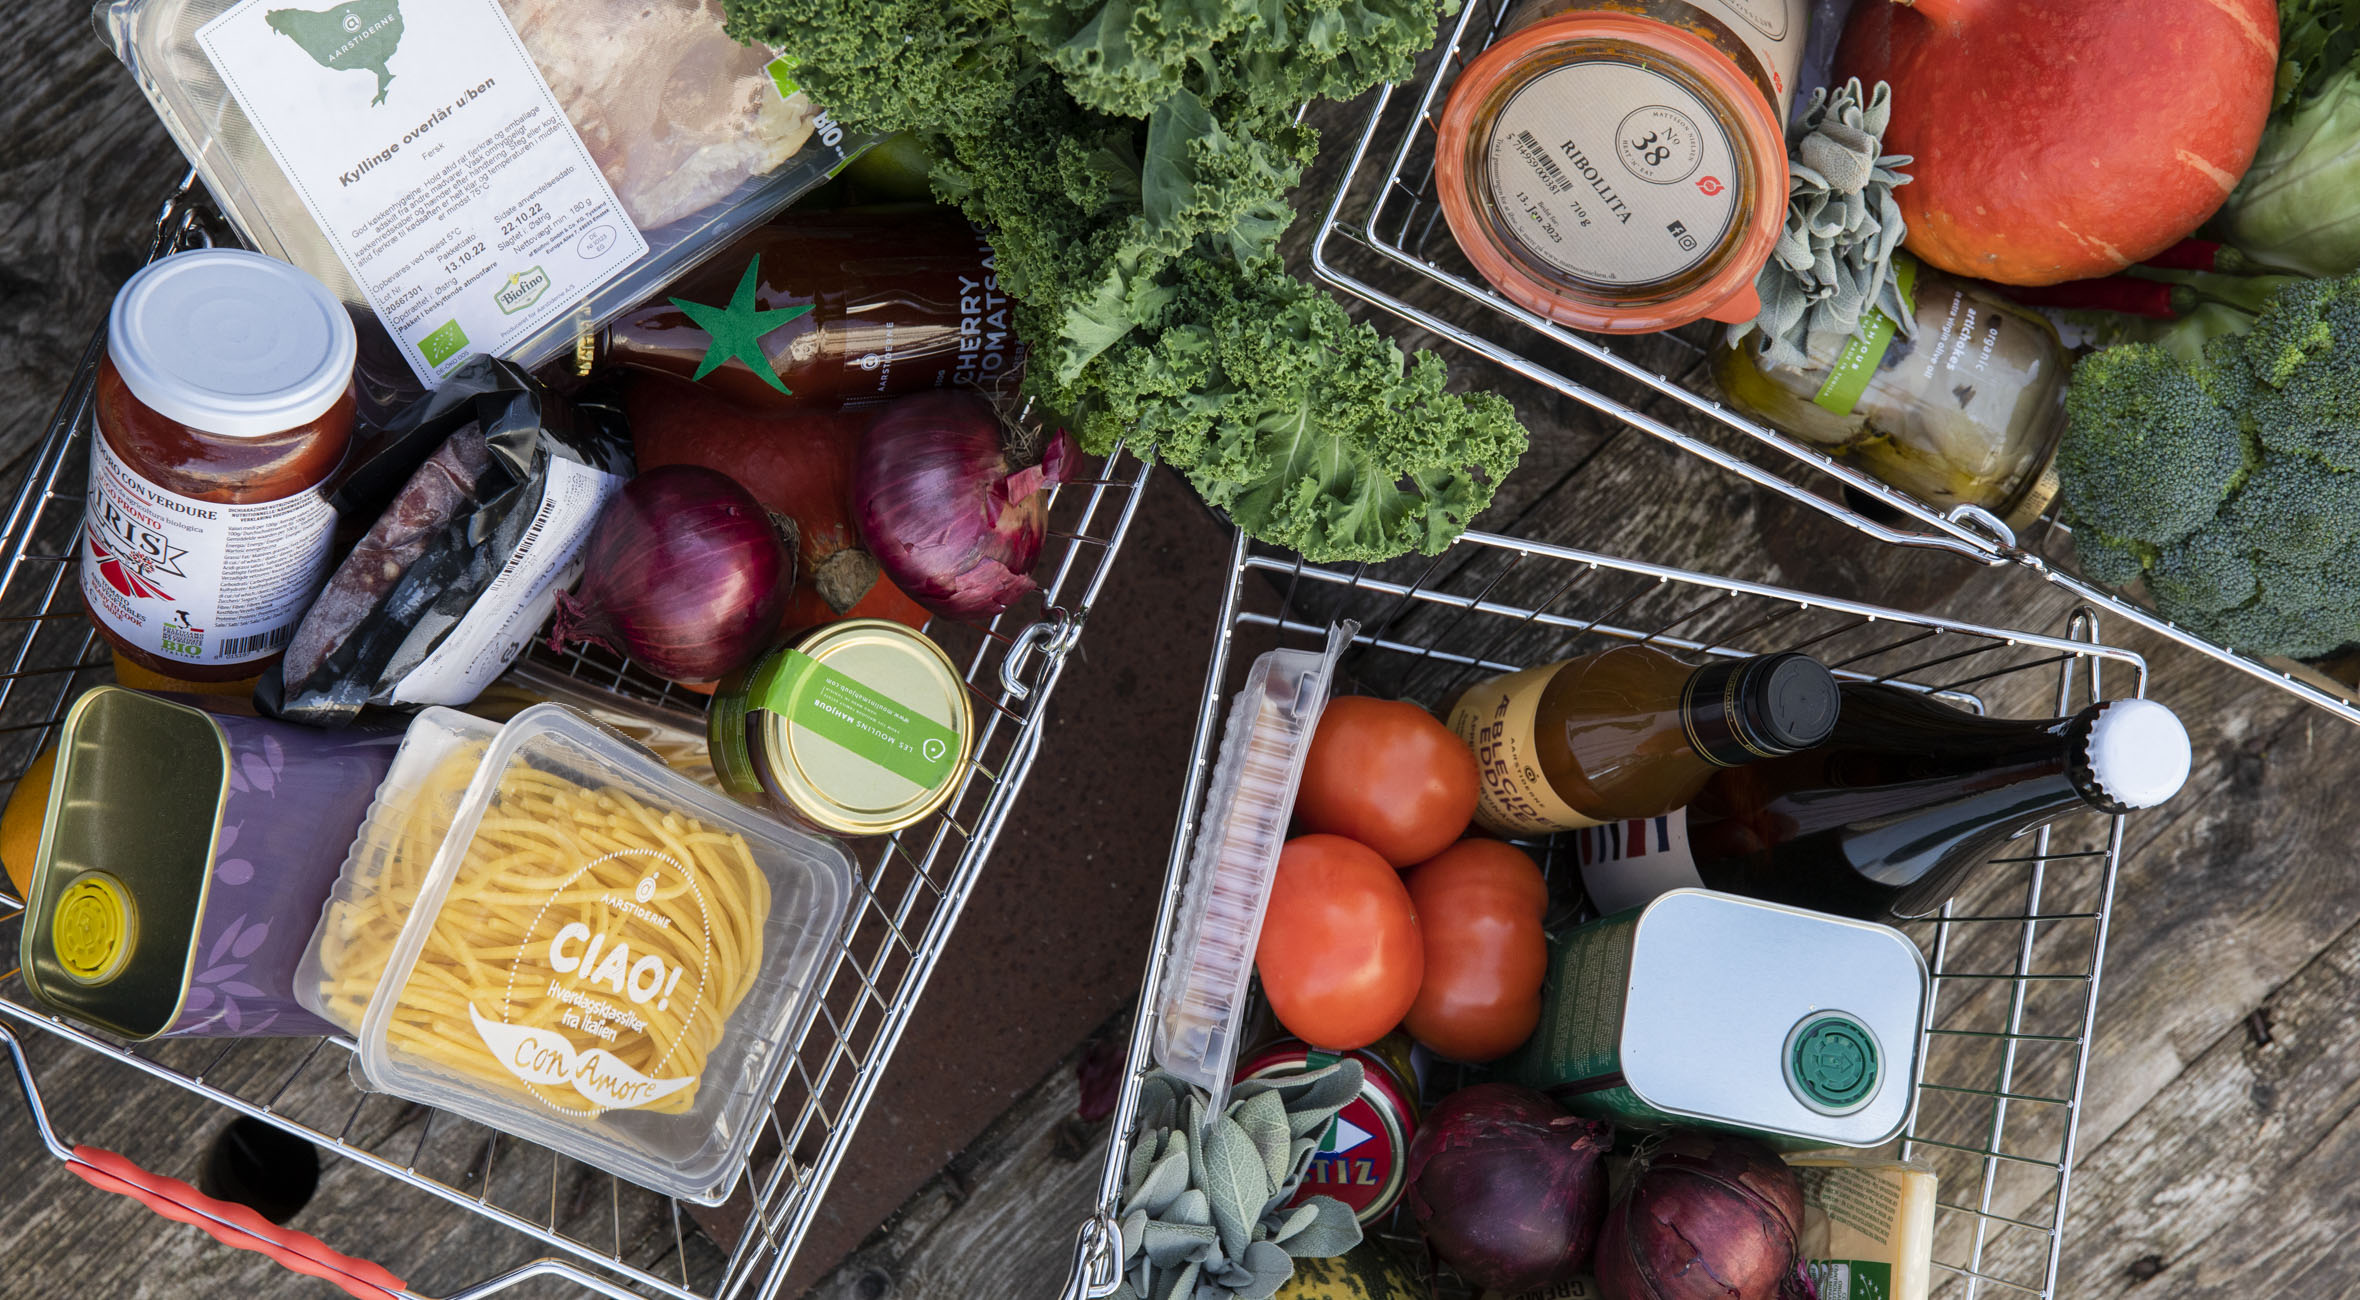 Frit valg til alt hos Aarstiderne på Østerbro – I en gårdbutik midt i byen kan du købe økologiske dagligvarer og specialiteter